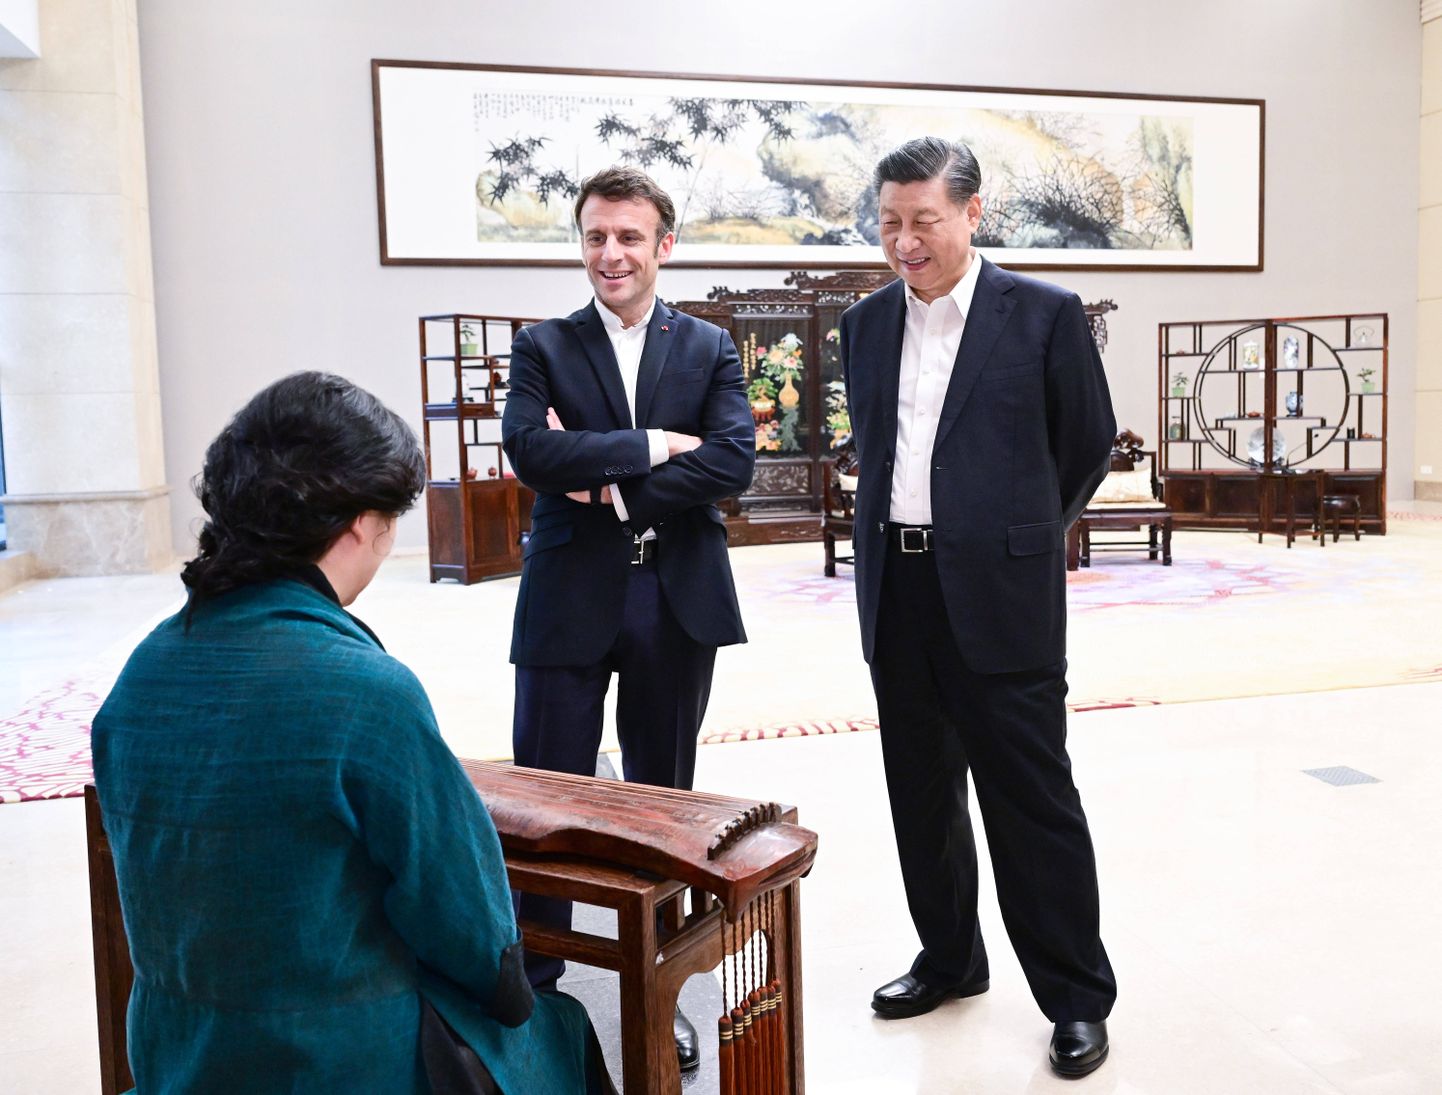 Aprillikuisel visiidil Hiina sai Prantsusmaa president Emmanuel Macron kuulata Guangzhous rahvamuusikat koos Hiina presidendi Xi Jinpingiga.